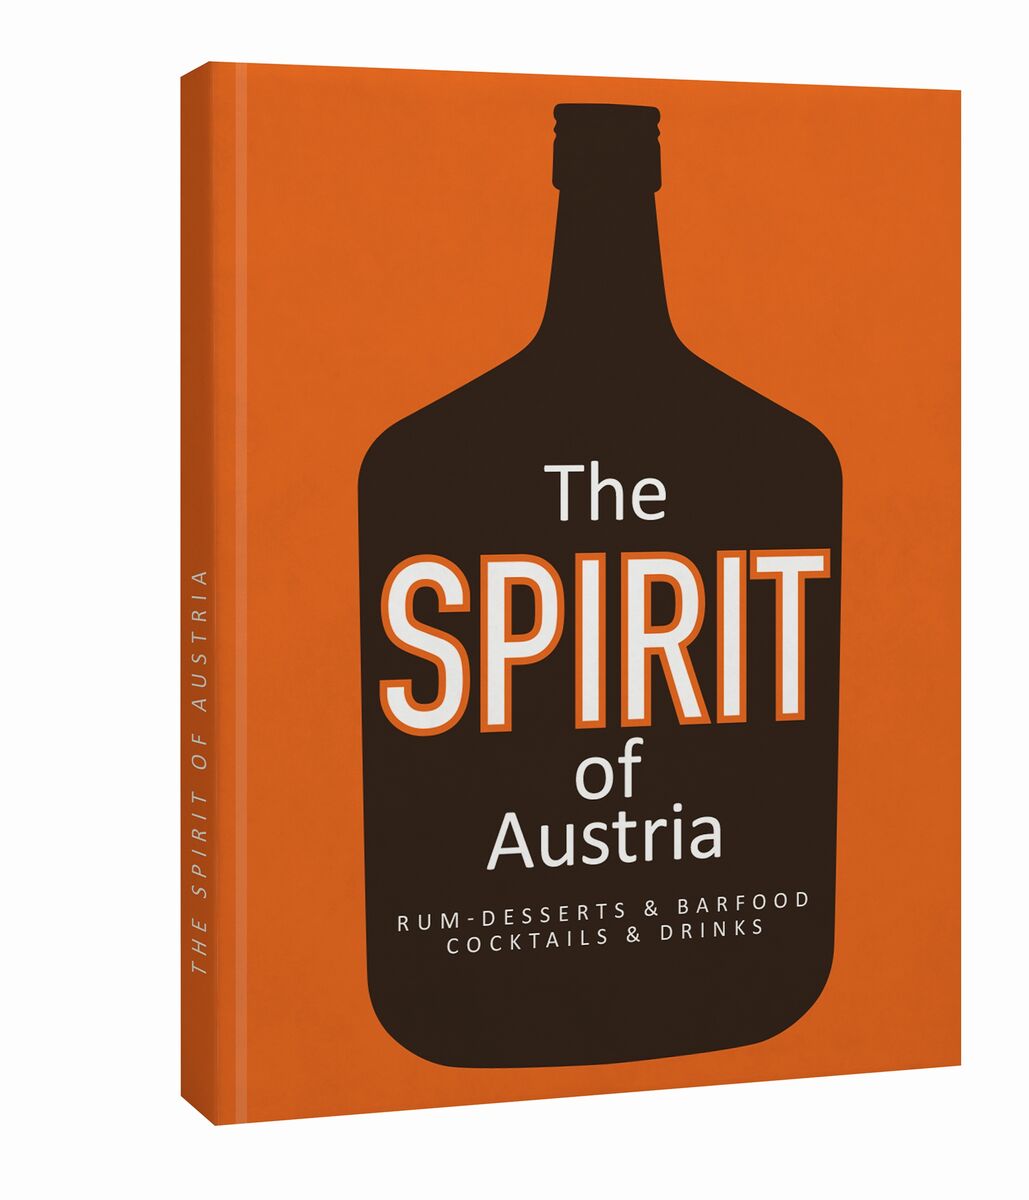 The Spirit of Austria